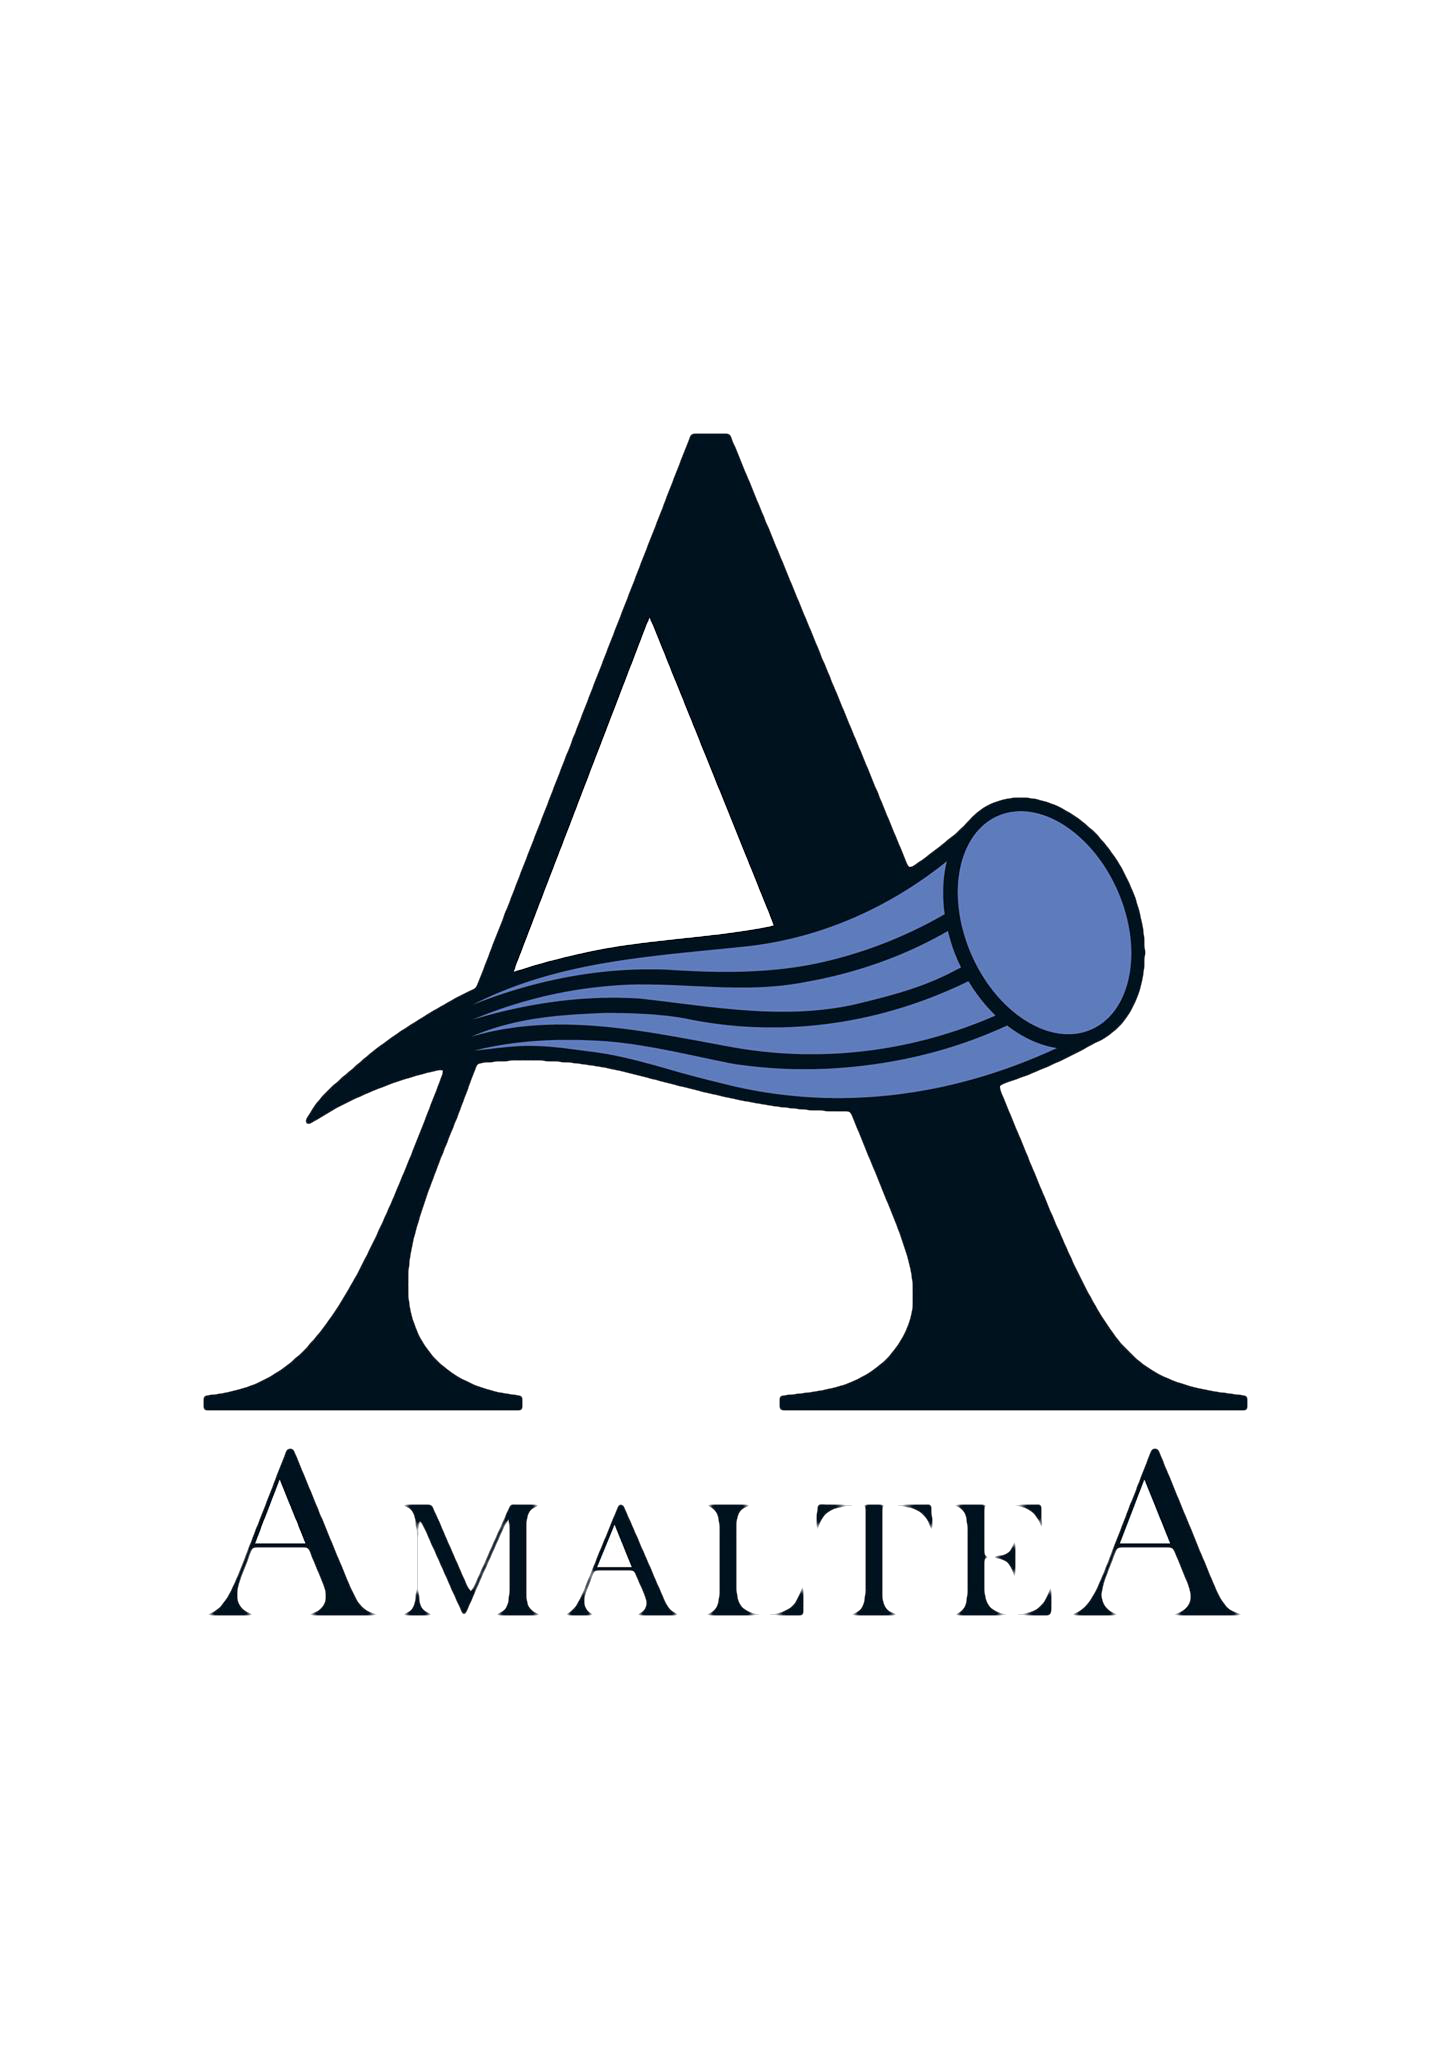 Amaltea